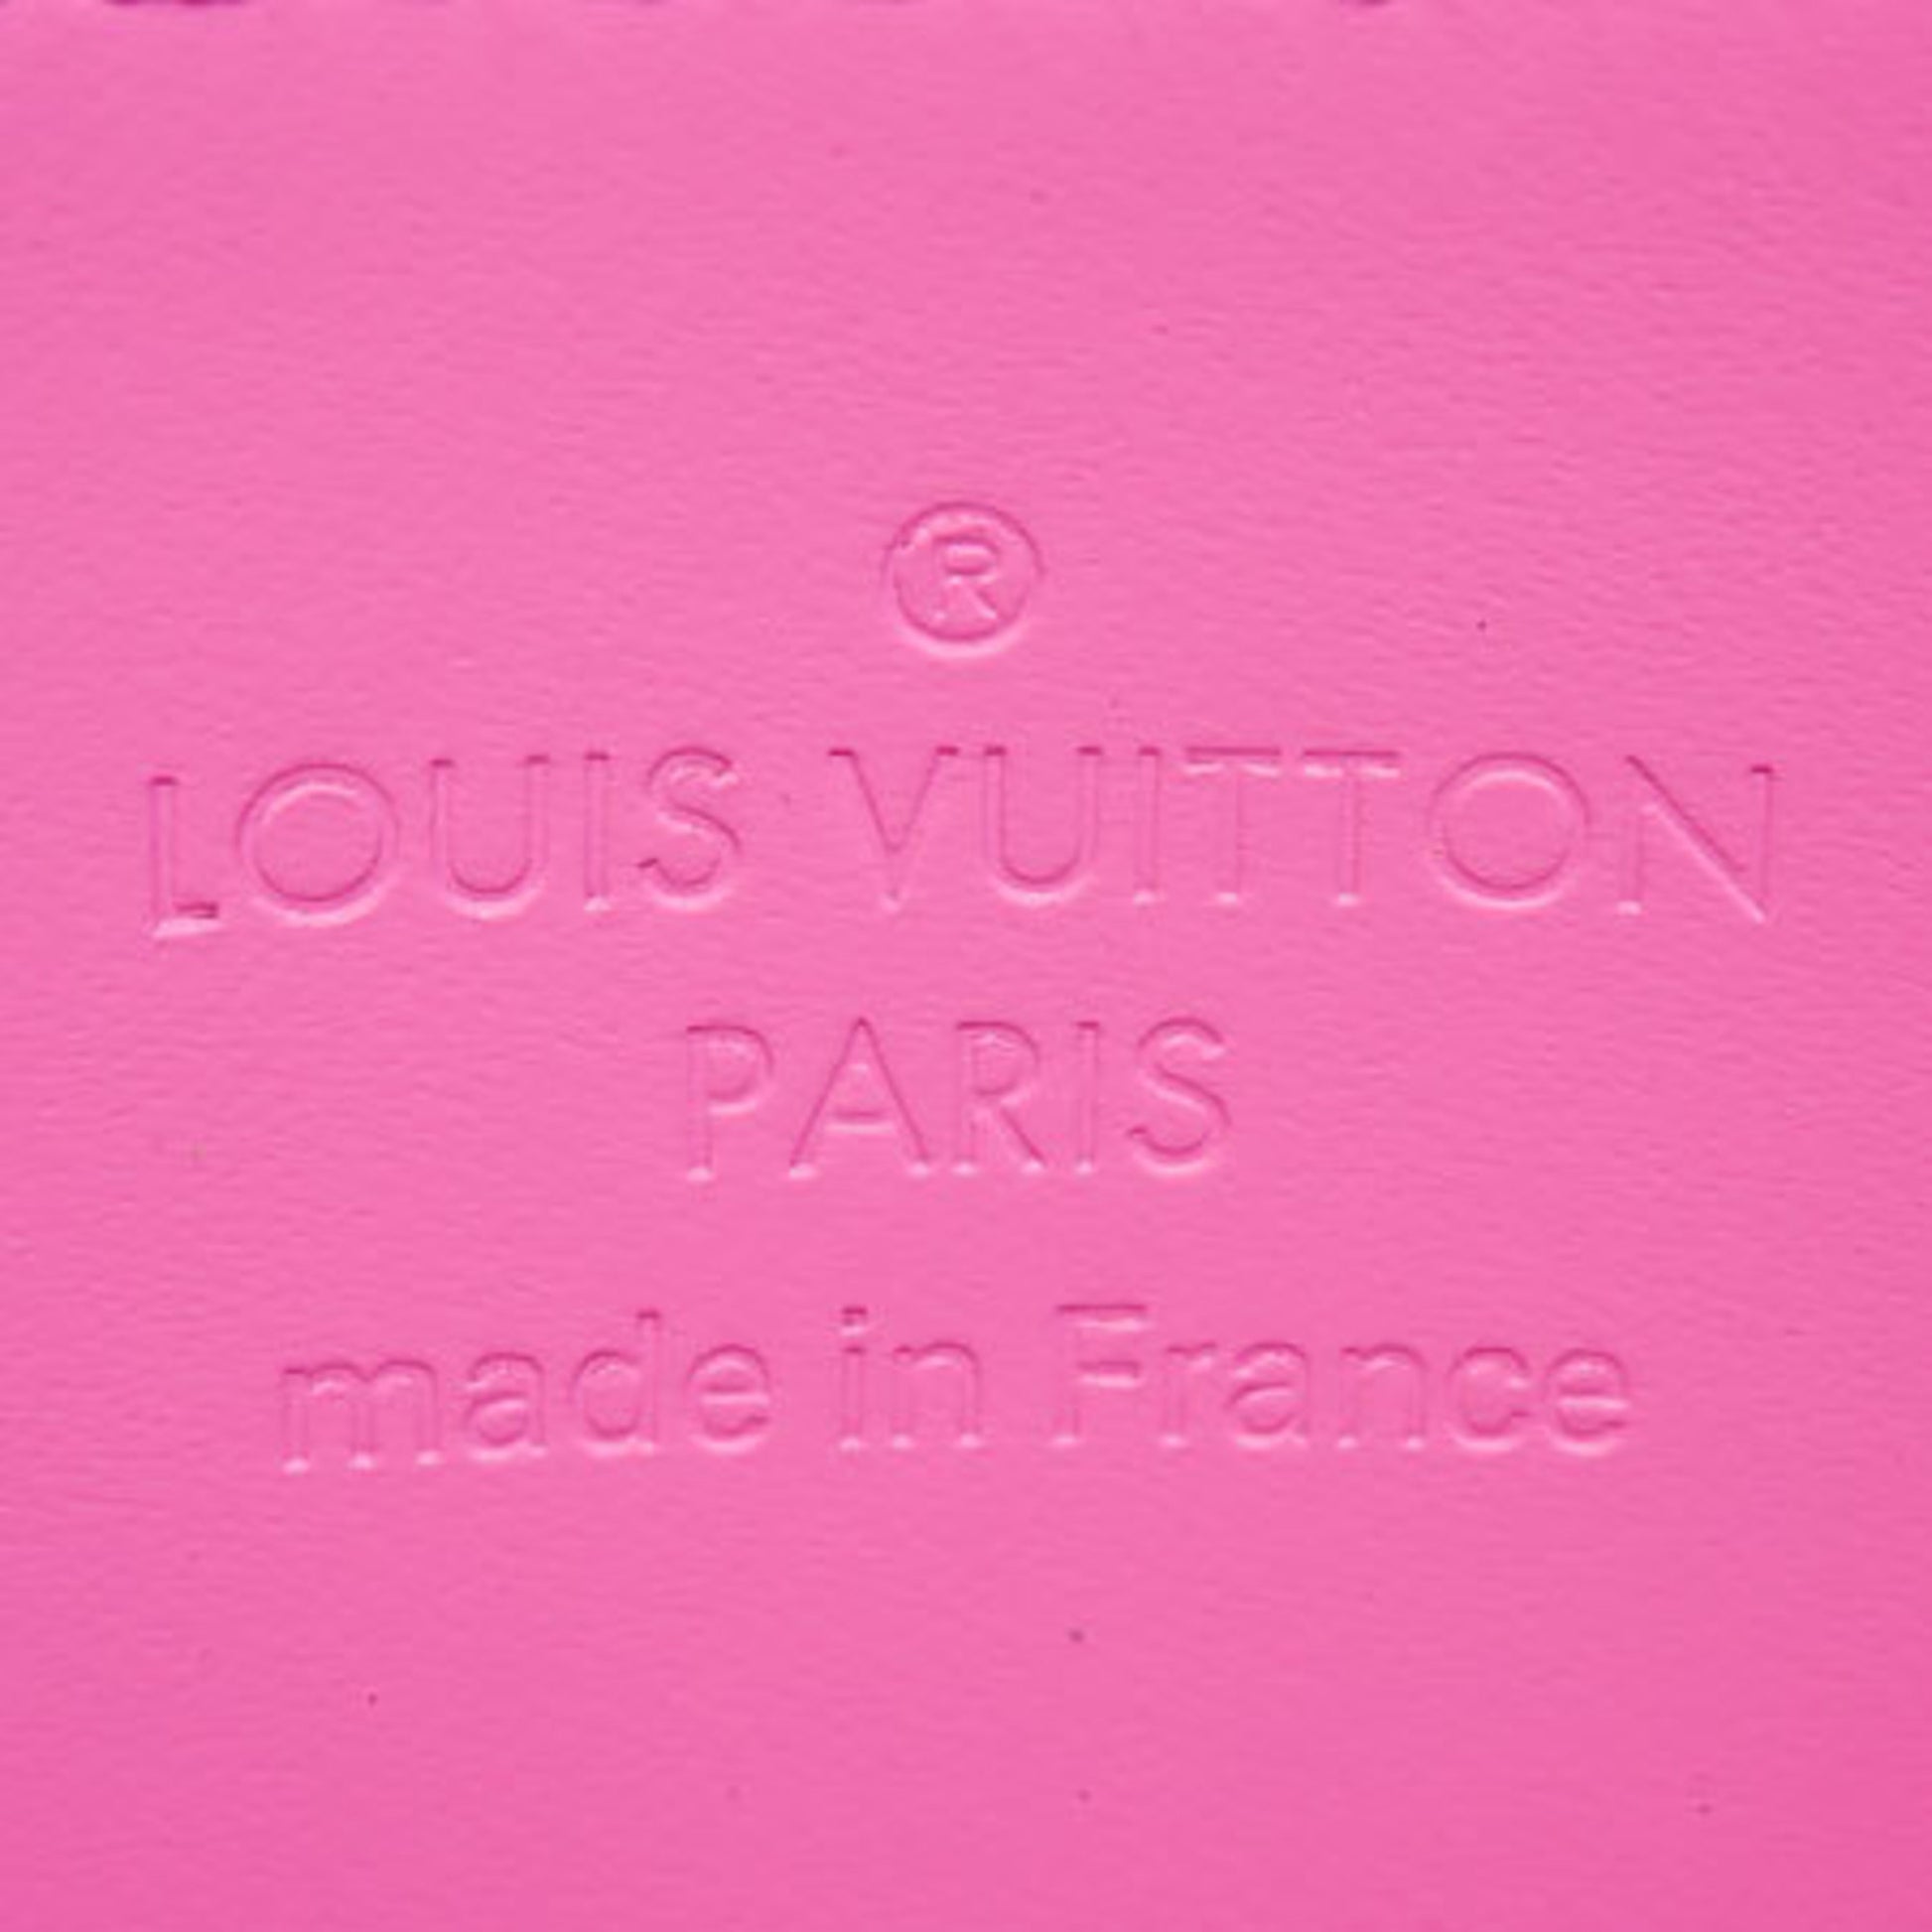 LOUIS VUITTON Louis Vuitton Monogram Groom Pochette Cle Coin Case M60033  Brown Multicolor